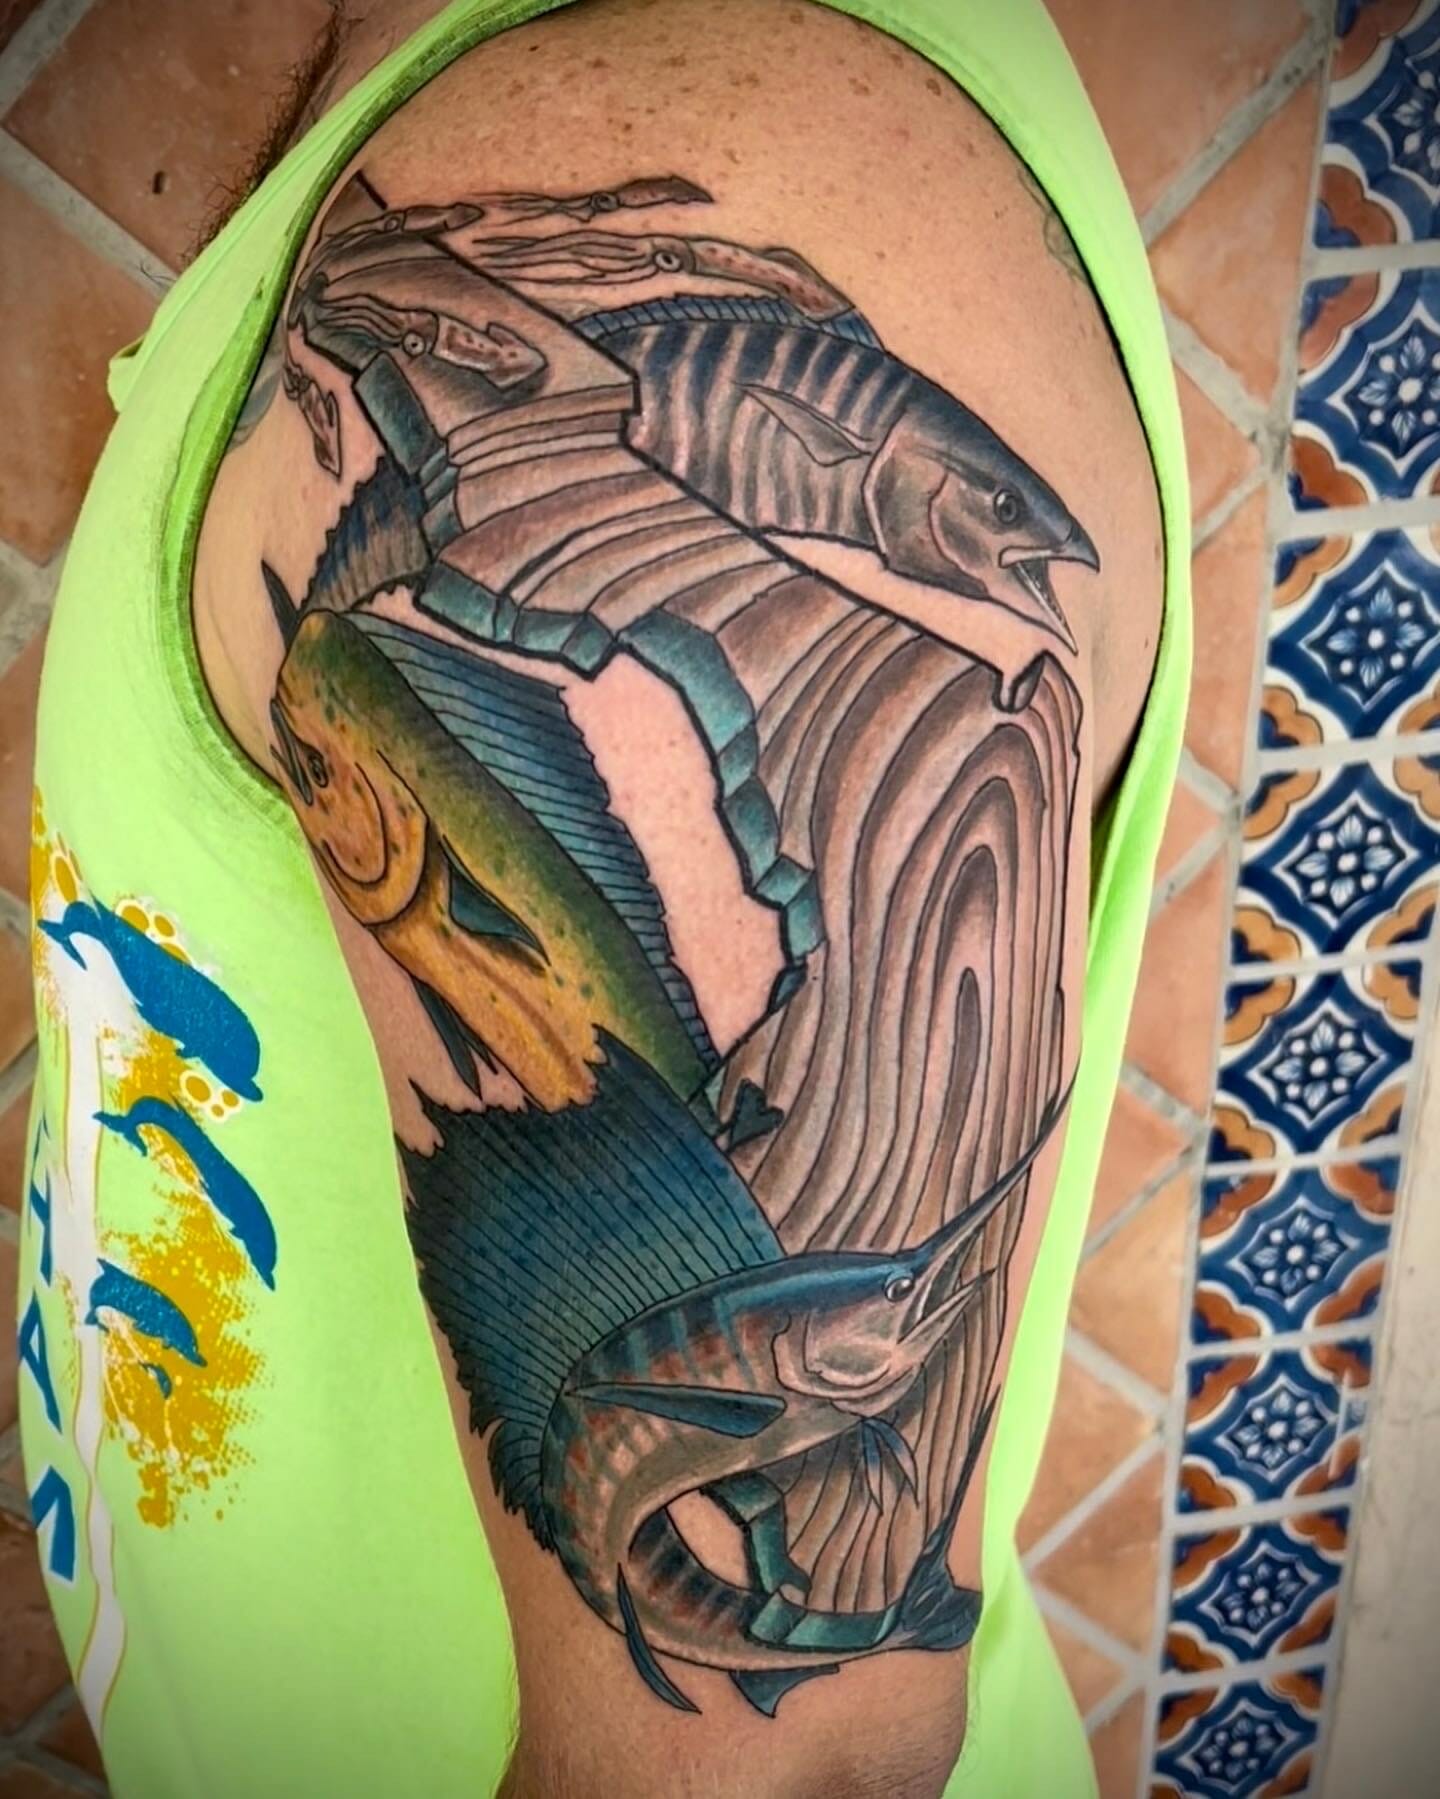 http://tattoomagz.com/david-hale-tattoos/david-hale-tattoo-black-and- red-fish/ | Native american tattoos, Tattoos, Body art tattoos